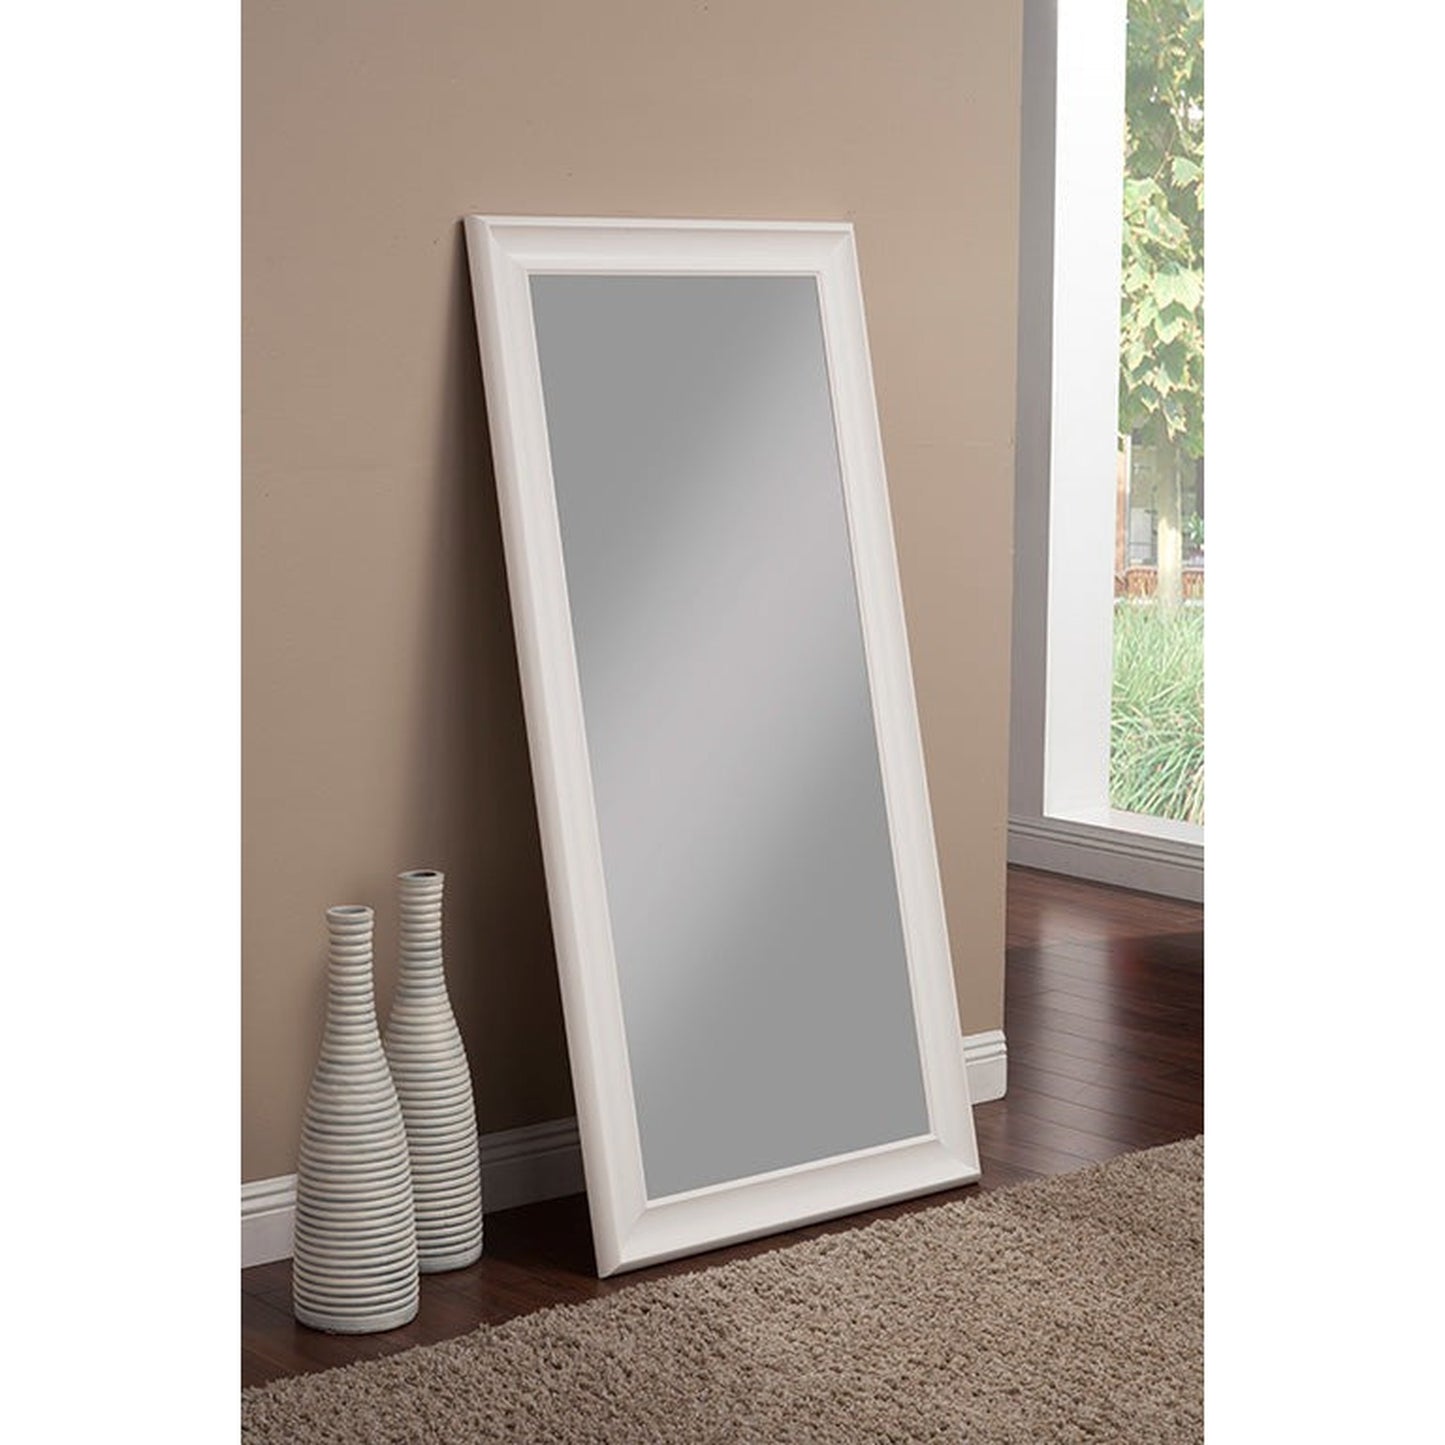 Benzara White Rectangular Polystyrene Frame Full Length Leaner Mirror